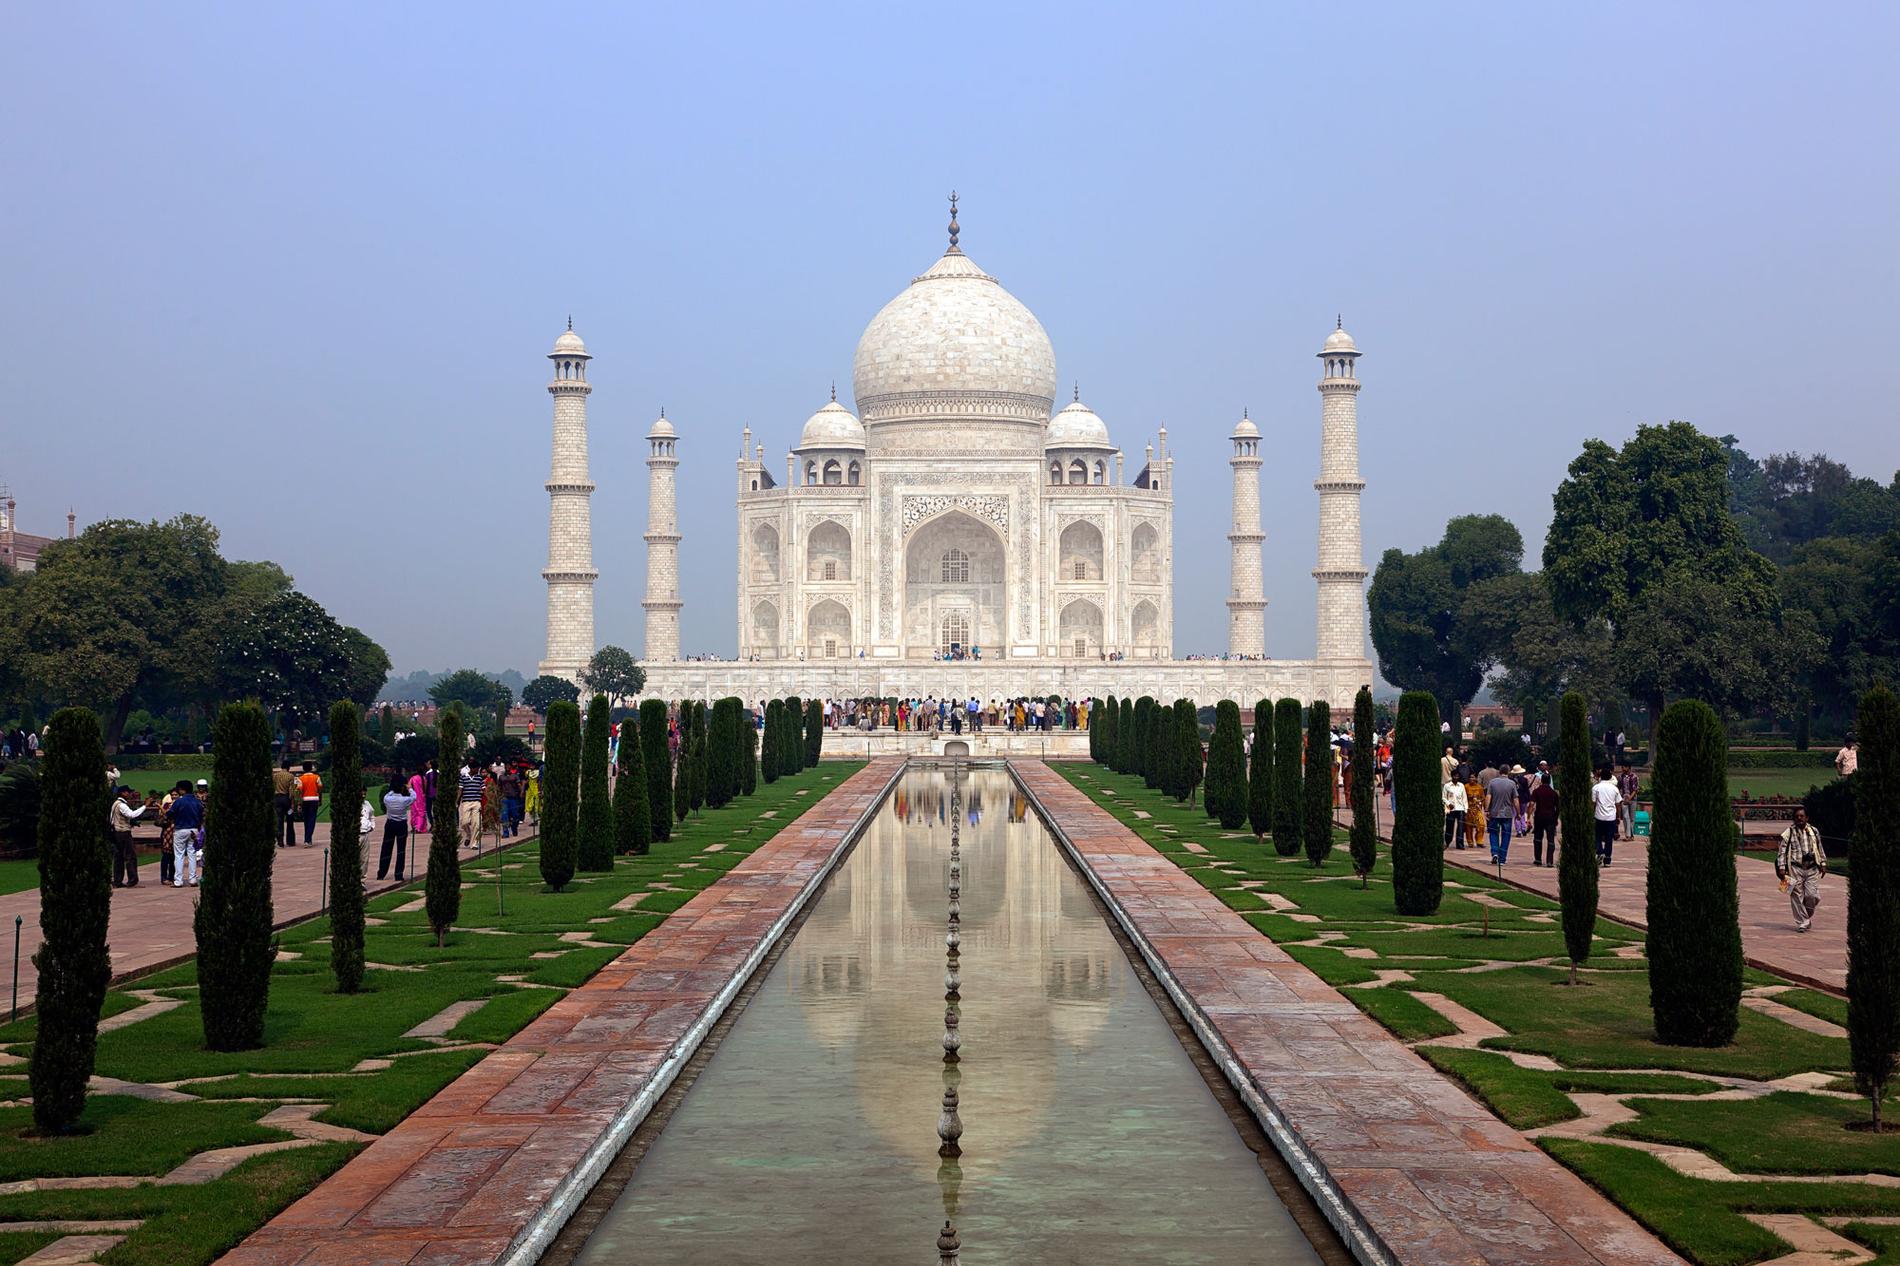 Taj Mahal är ett mausoleum beläget utanför staden Agra i Indien. Det uppfördes på 1600-talet. Fasaden är i vit marmor med inlägg av halvädelstenar i olika färger.